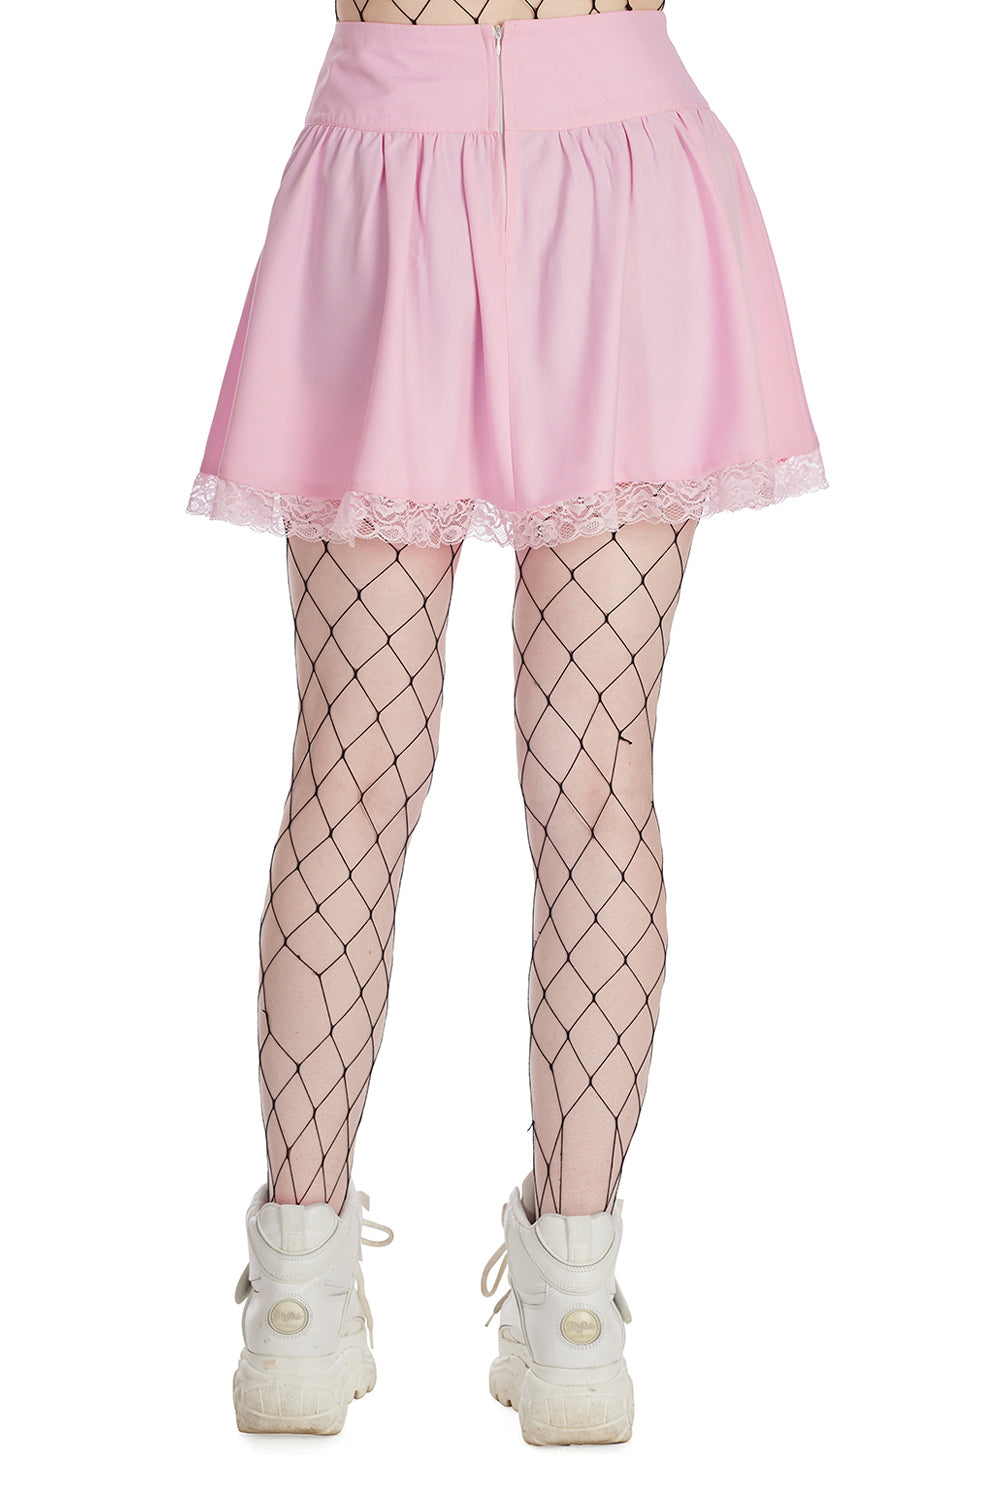 Banned Apparel Sakura Skirt | Pink